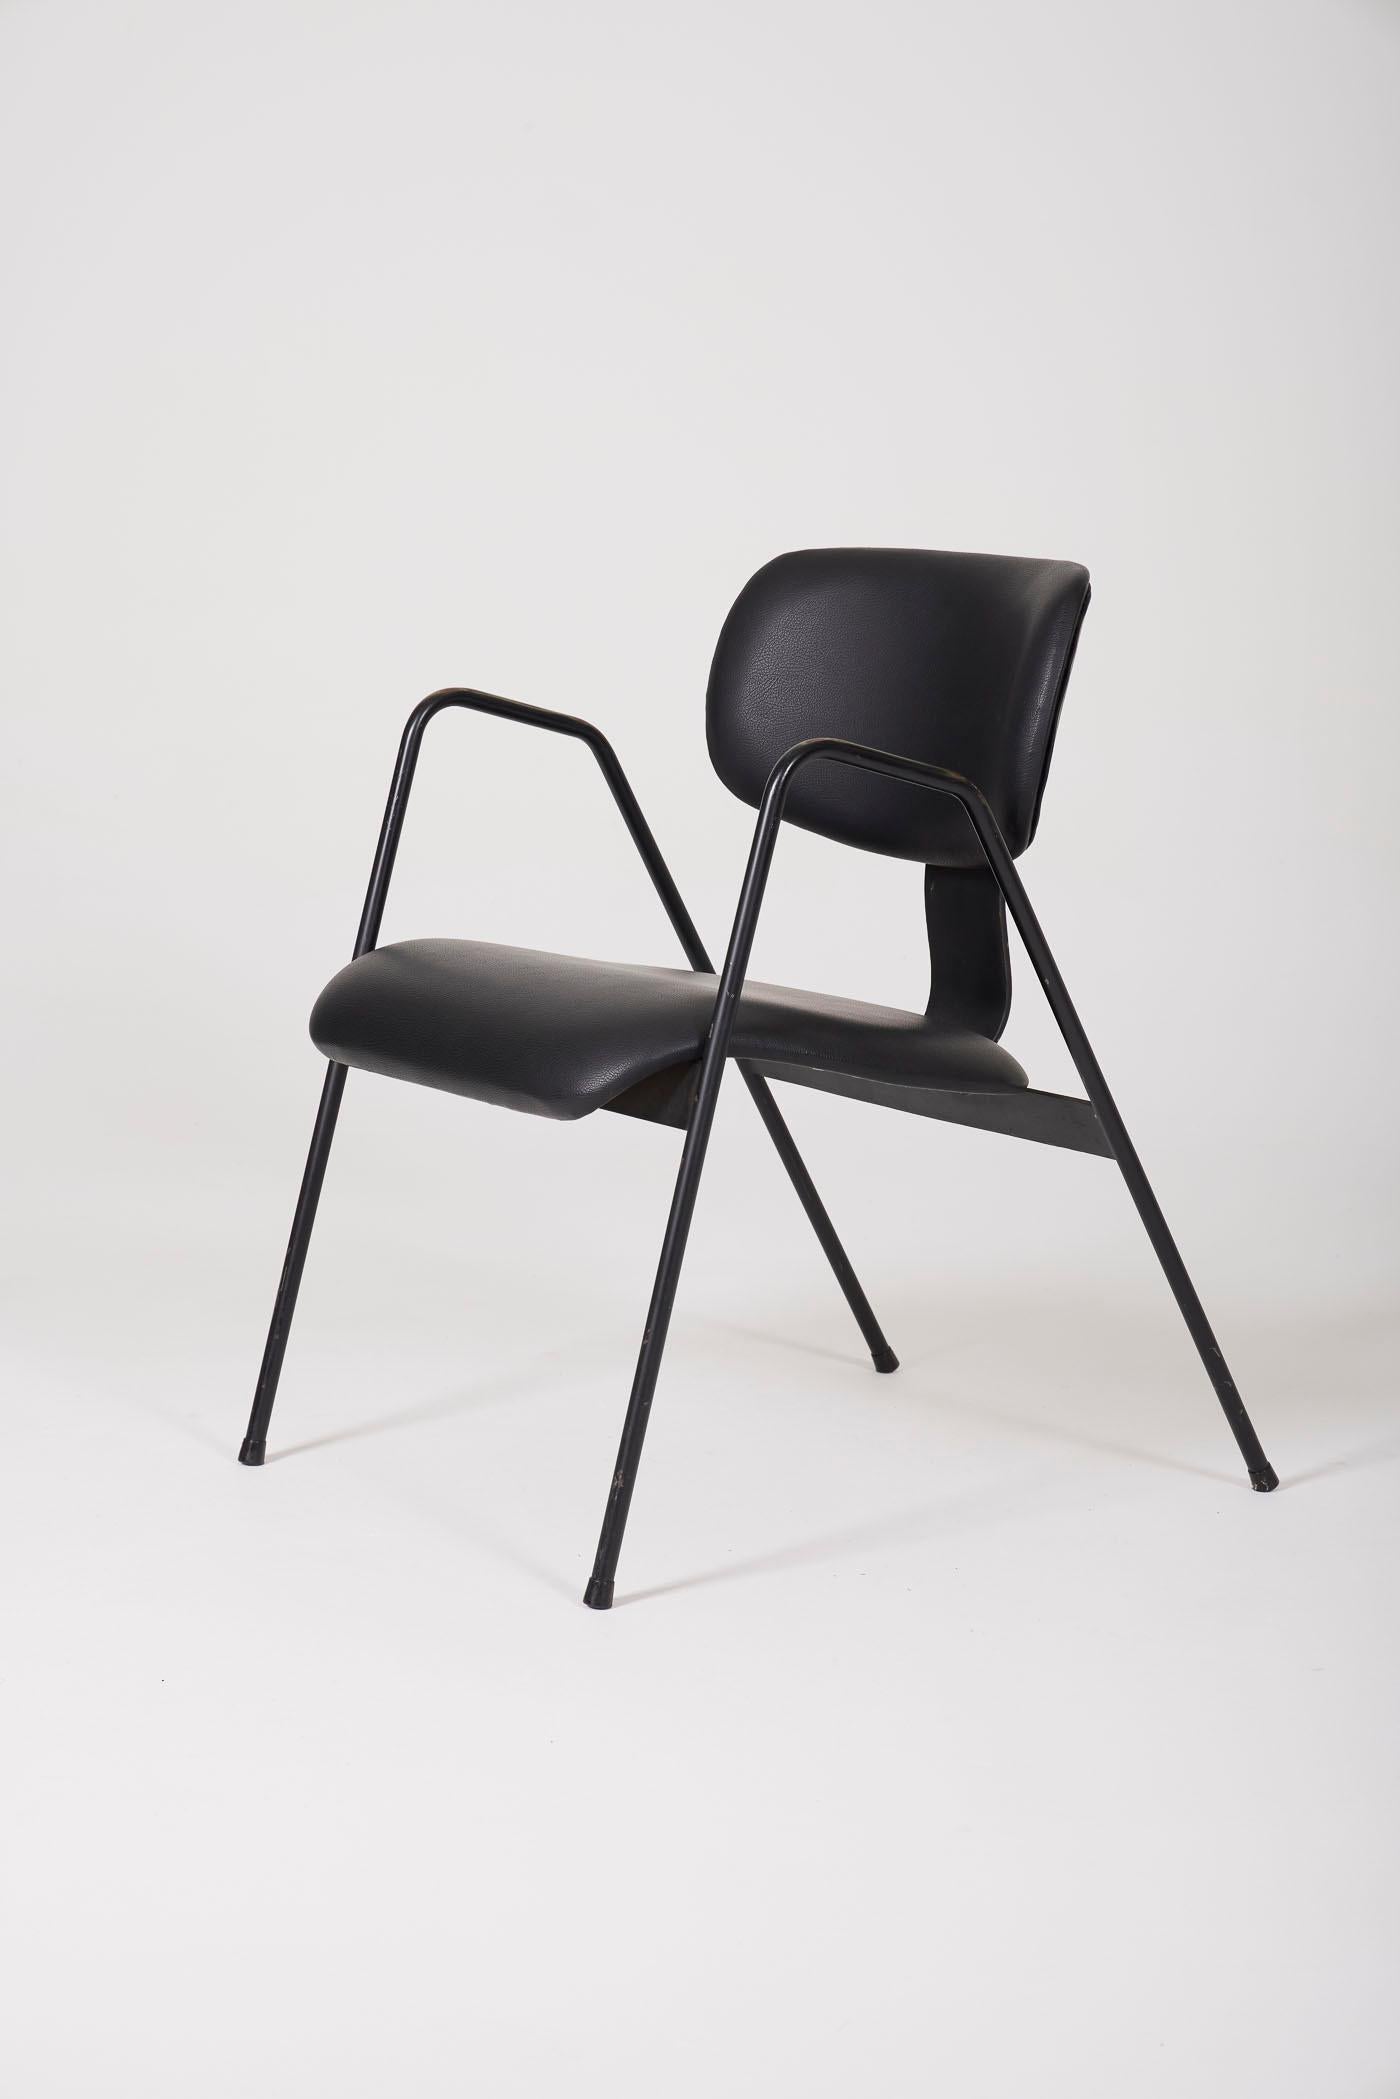 Sessel Modell F1 des belgischen Designers Willy Van Der Meeren für Tubax, 1950er Jahre. Der Sitz und die Rückenlehne sind aus schwarzem Kunstleder. Das Gestell ist aus schwarz lackiertem Metall. 2 Stühle verfügbar. In perfektem Zustand.
DV441